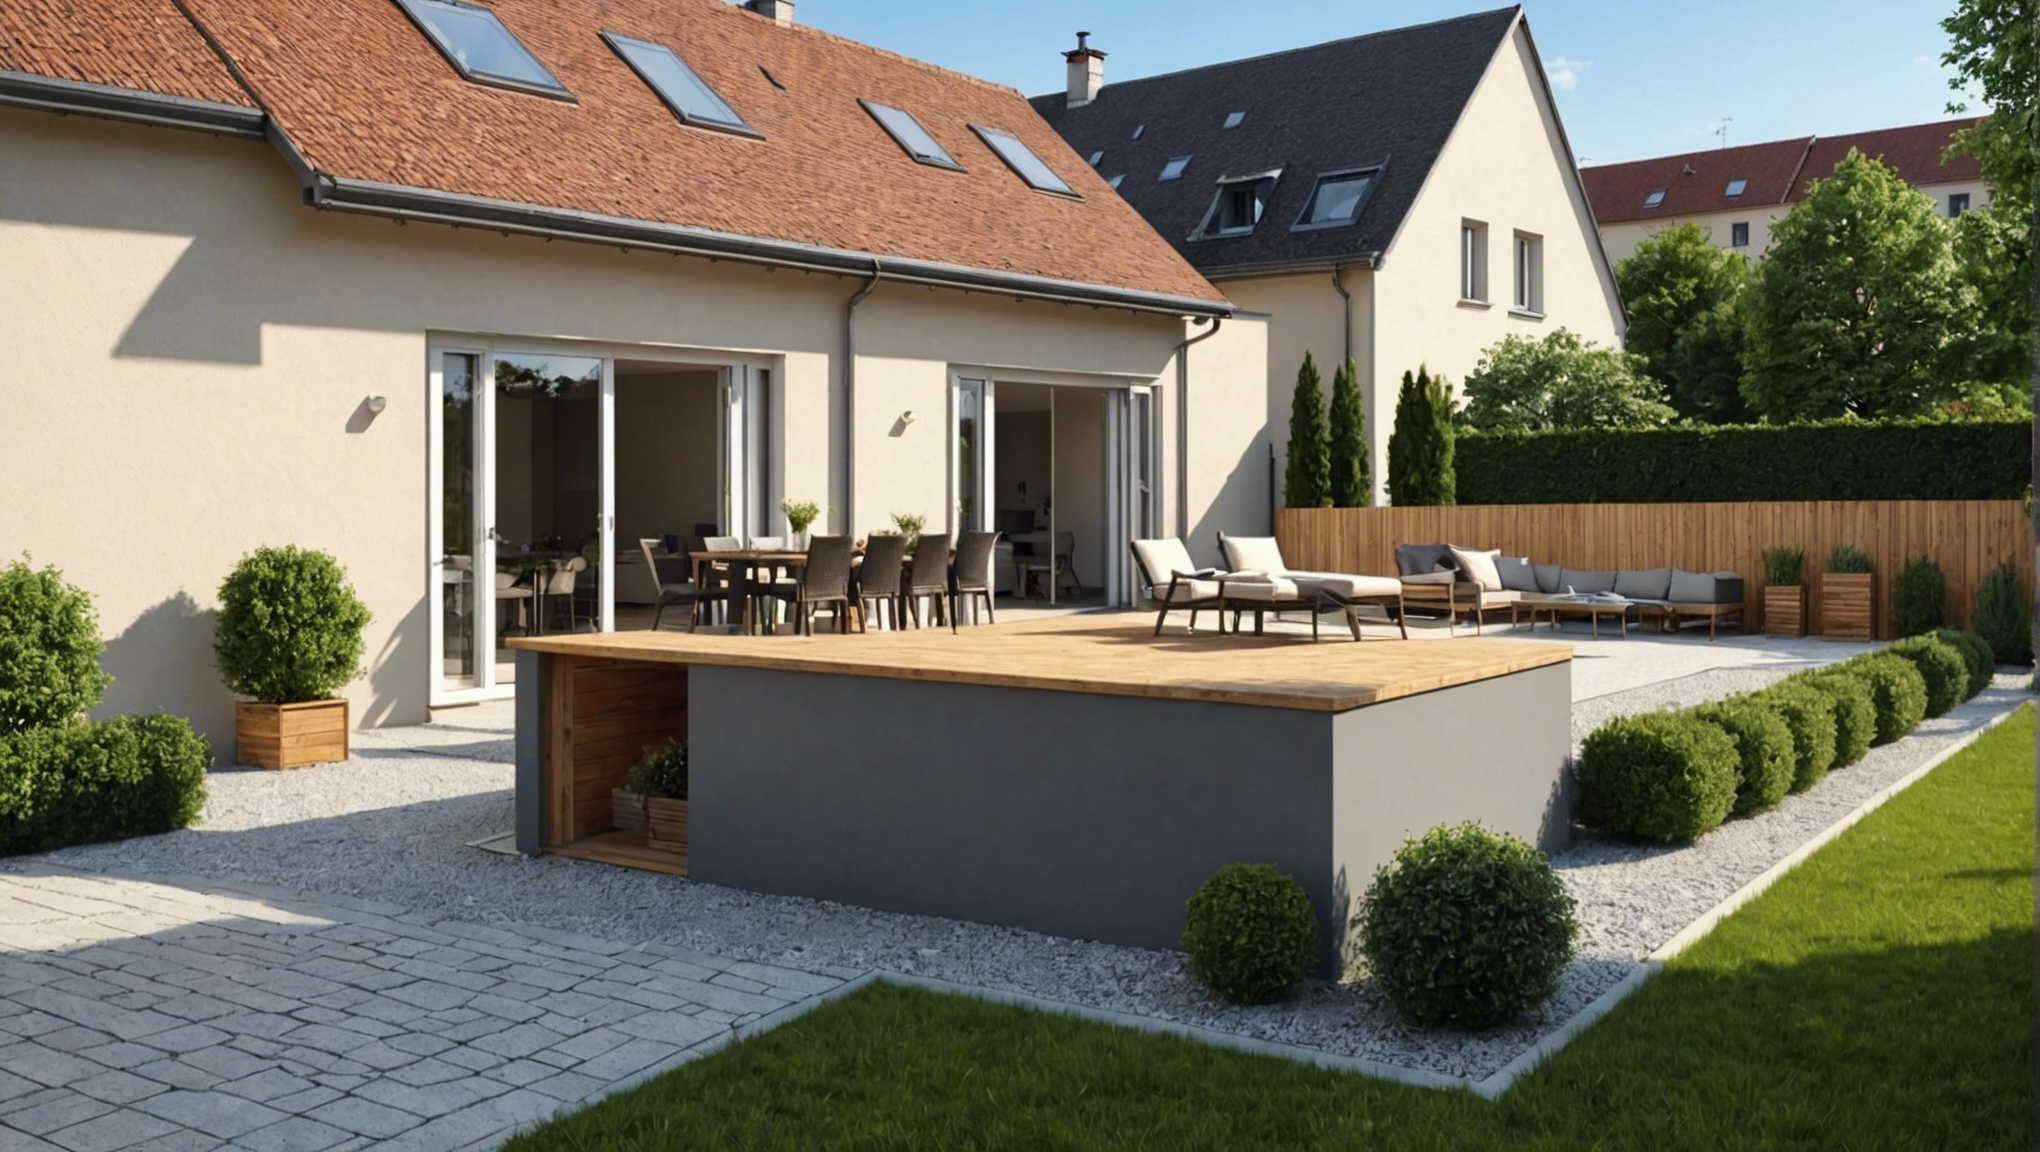 besoin d'un terrassement pour votre maison à strasbourg ? faites appel à nos services professionnels pour une préparation de terrain de qualité.